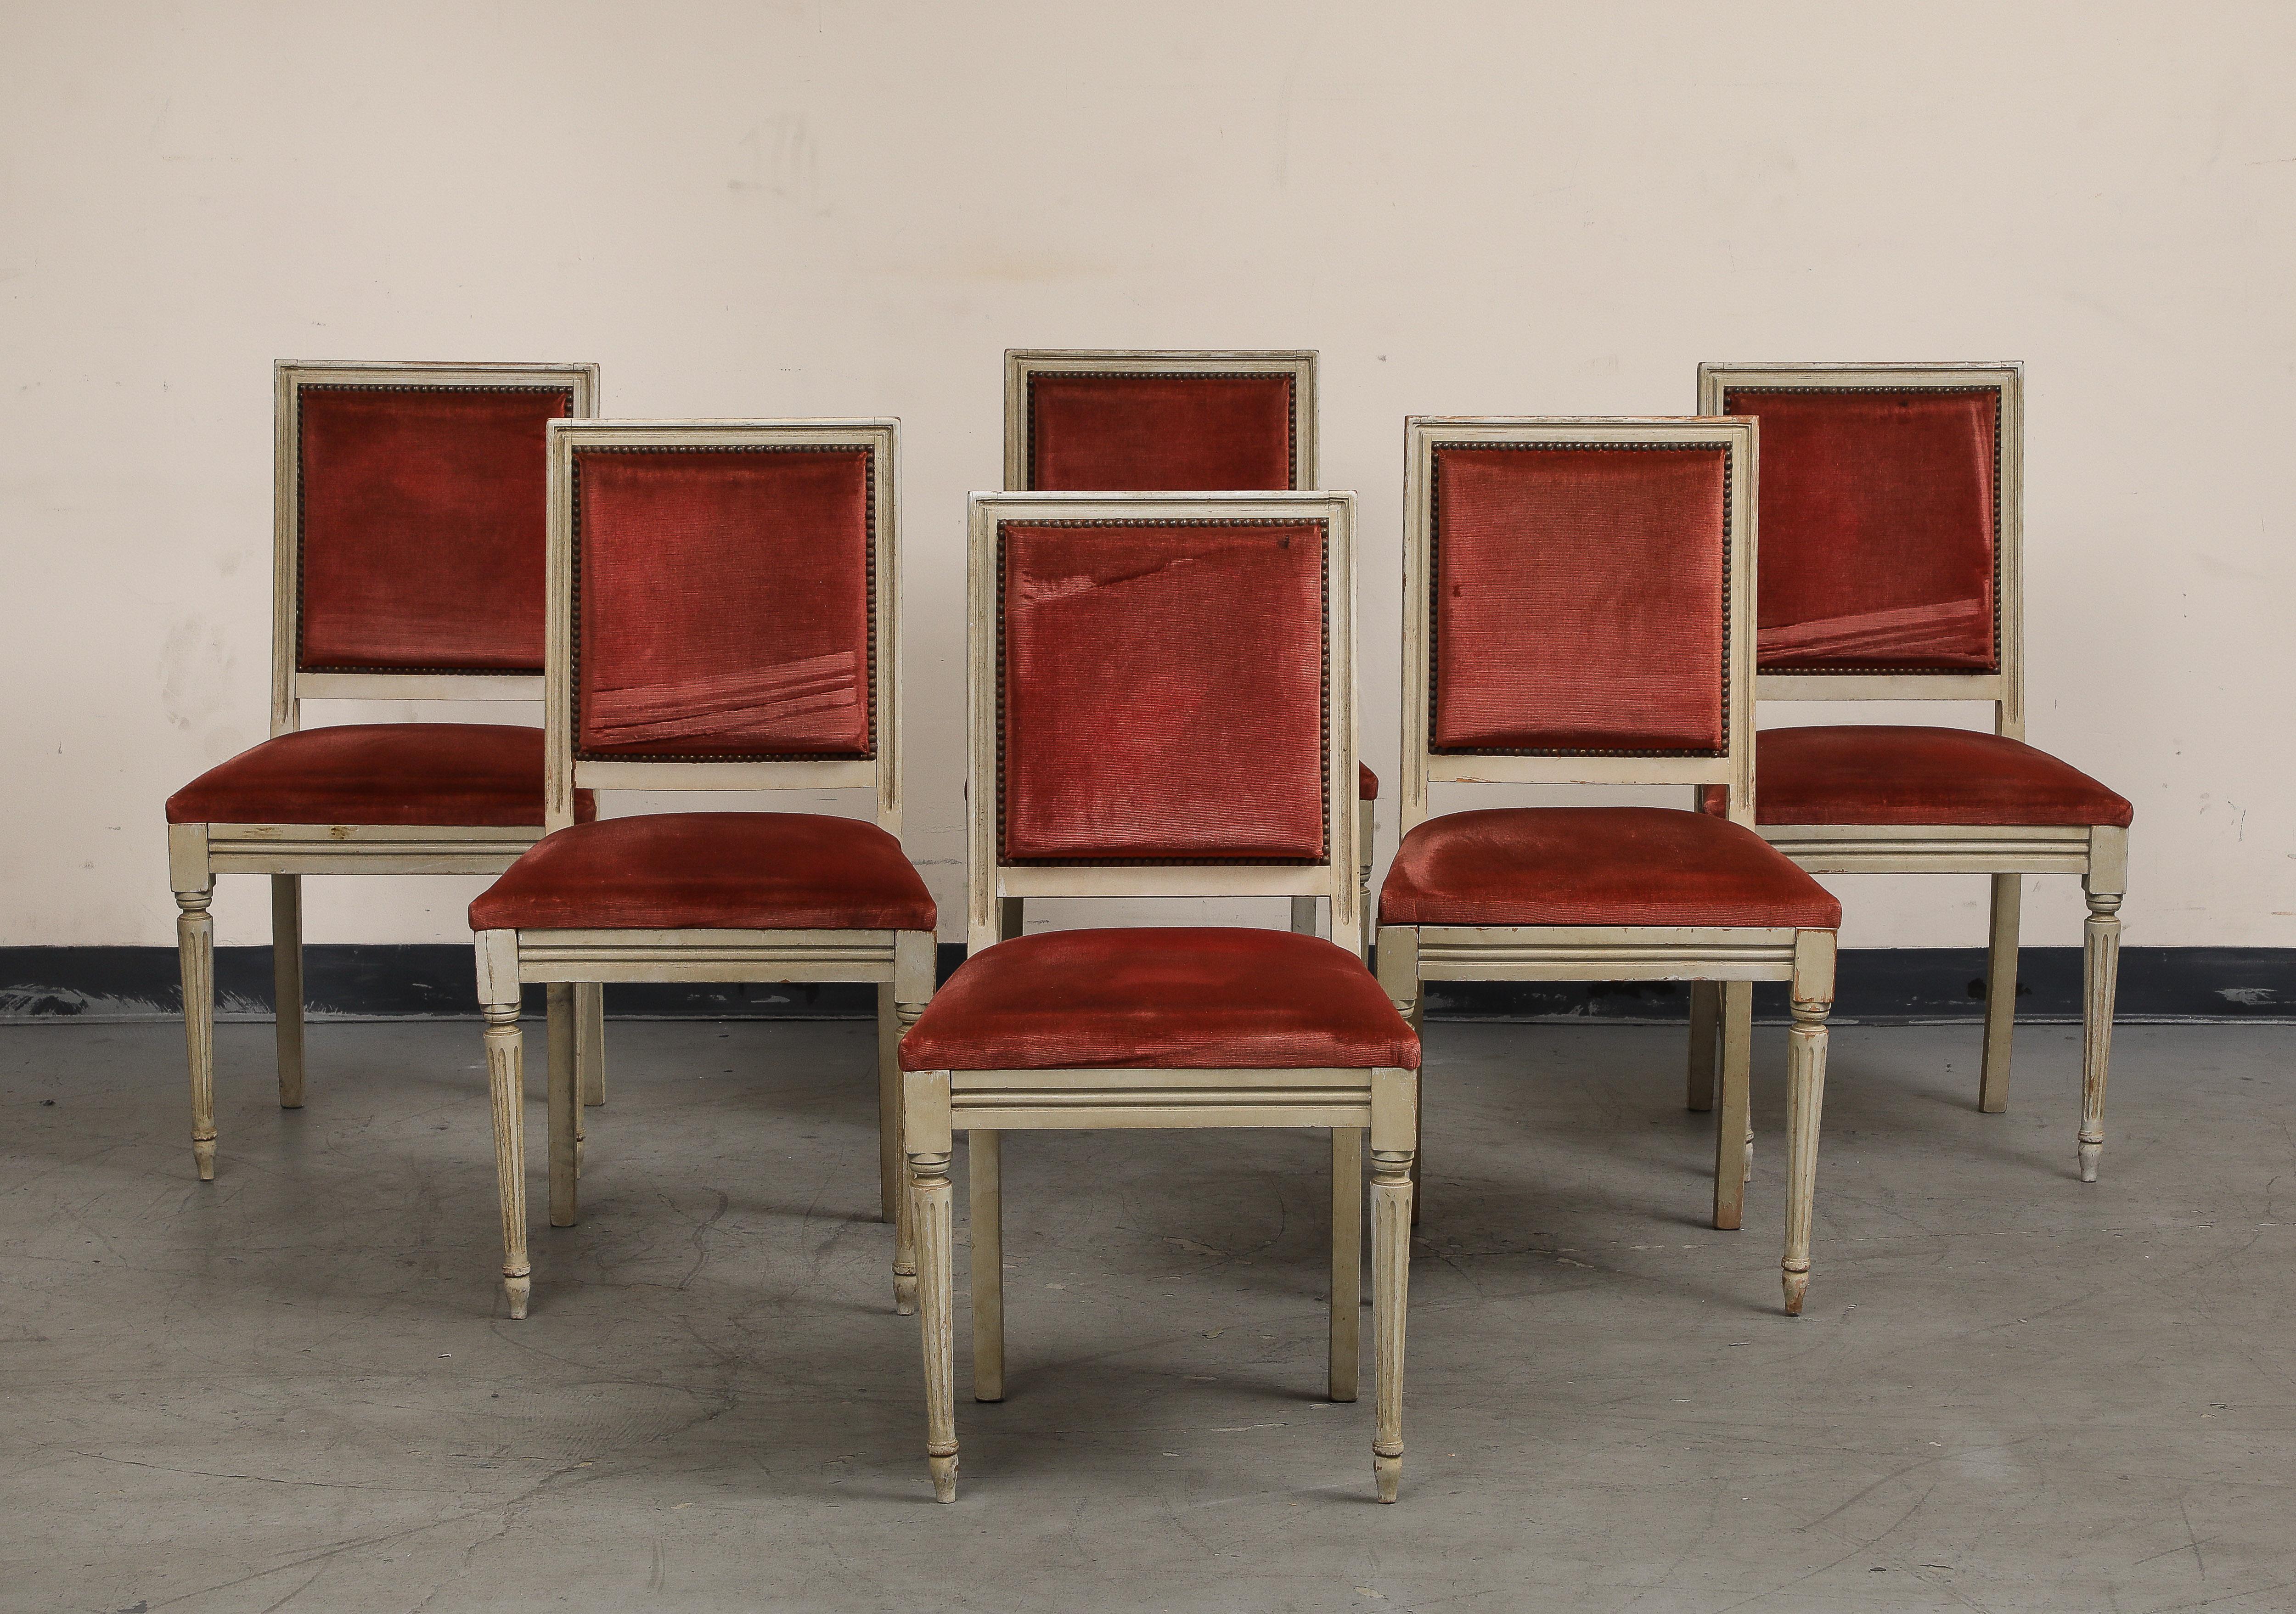 Ensemble de six (6) chaises d'appoint peintes de style Louis XVI, datant du début du 20e siècle. Peinture d'origine / finition déformée sur les cadres avec des pieds cannelés et effilés. L'assise et le dossier sont recouverts de velours rouge